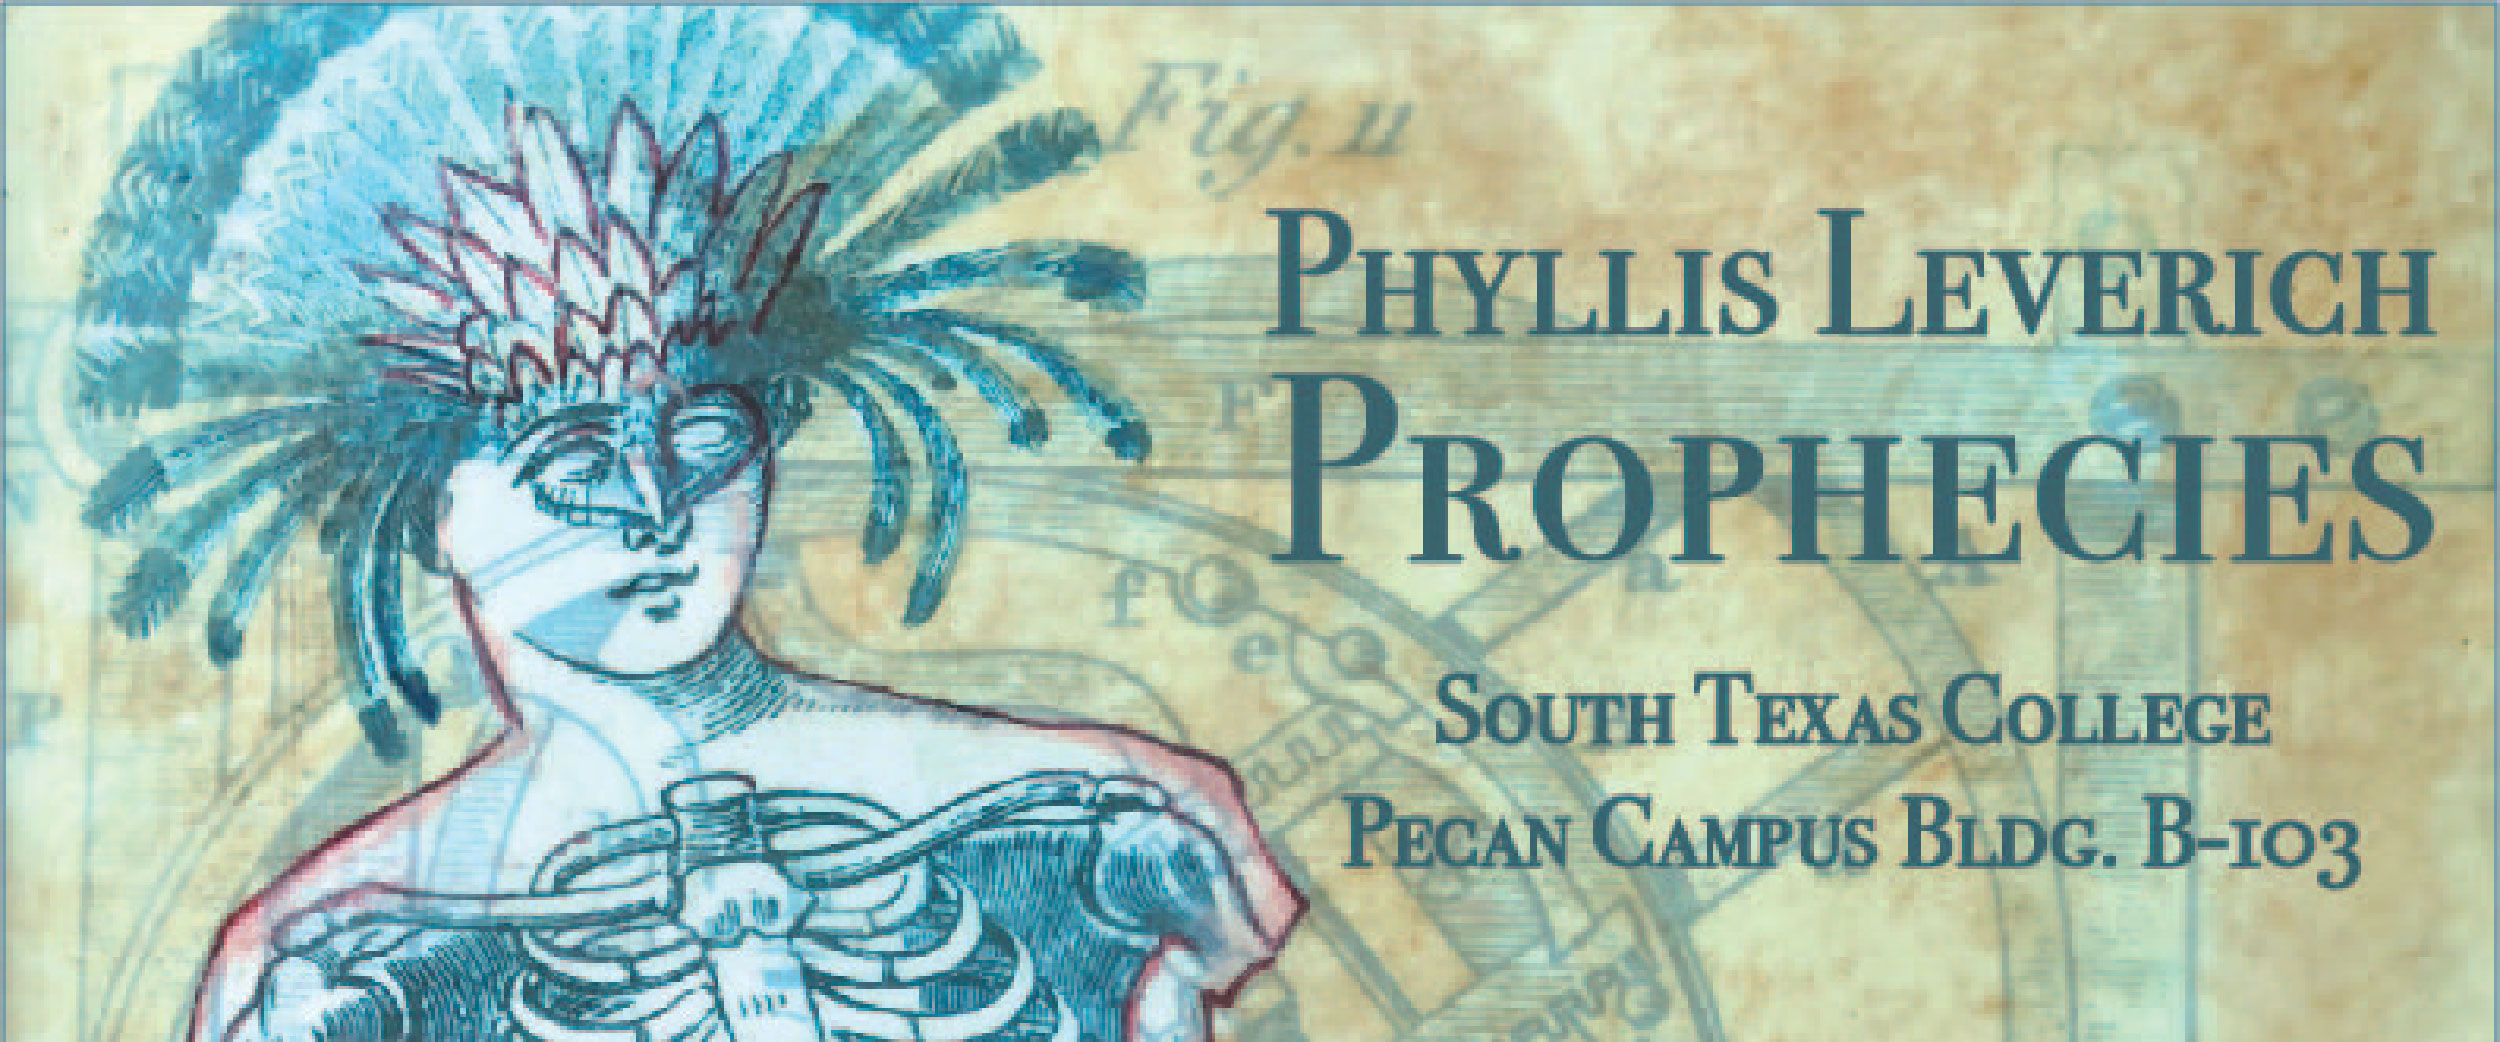 Phyllis Leverich: Prophecies